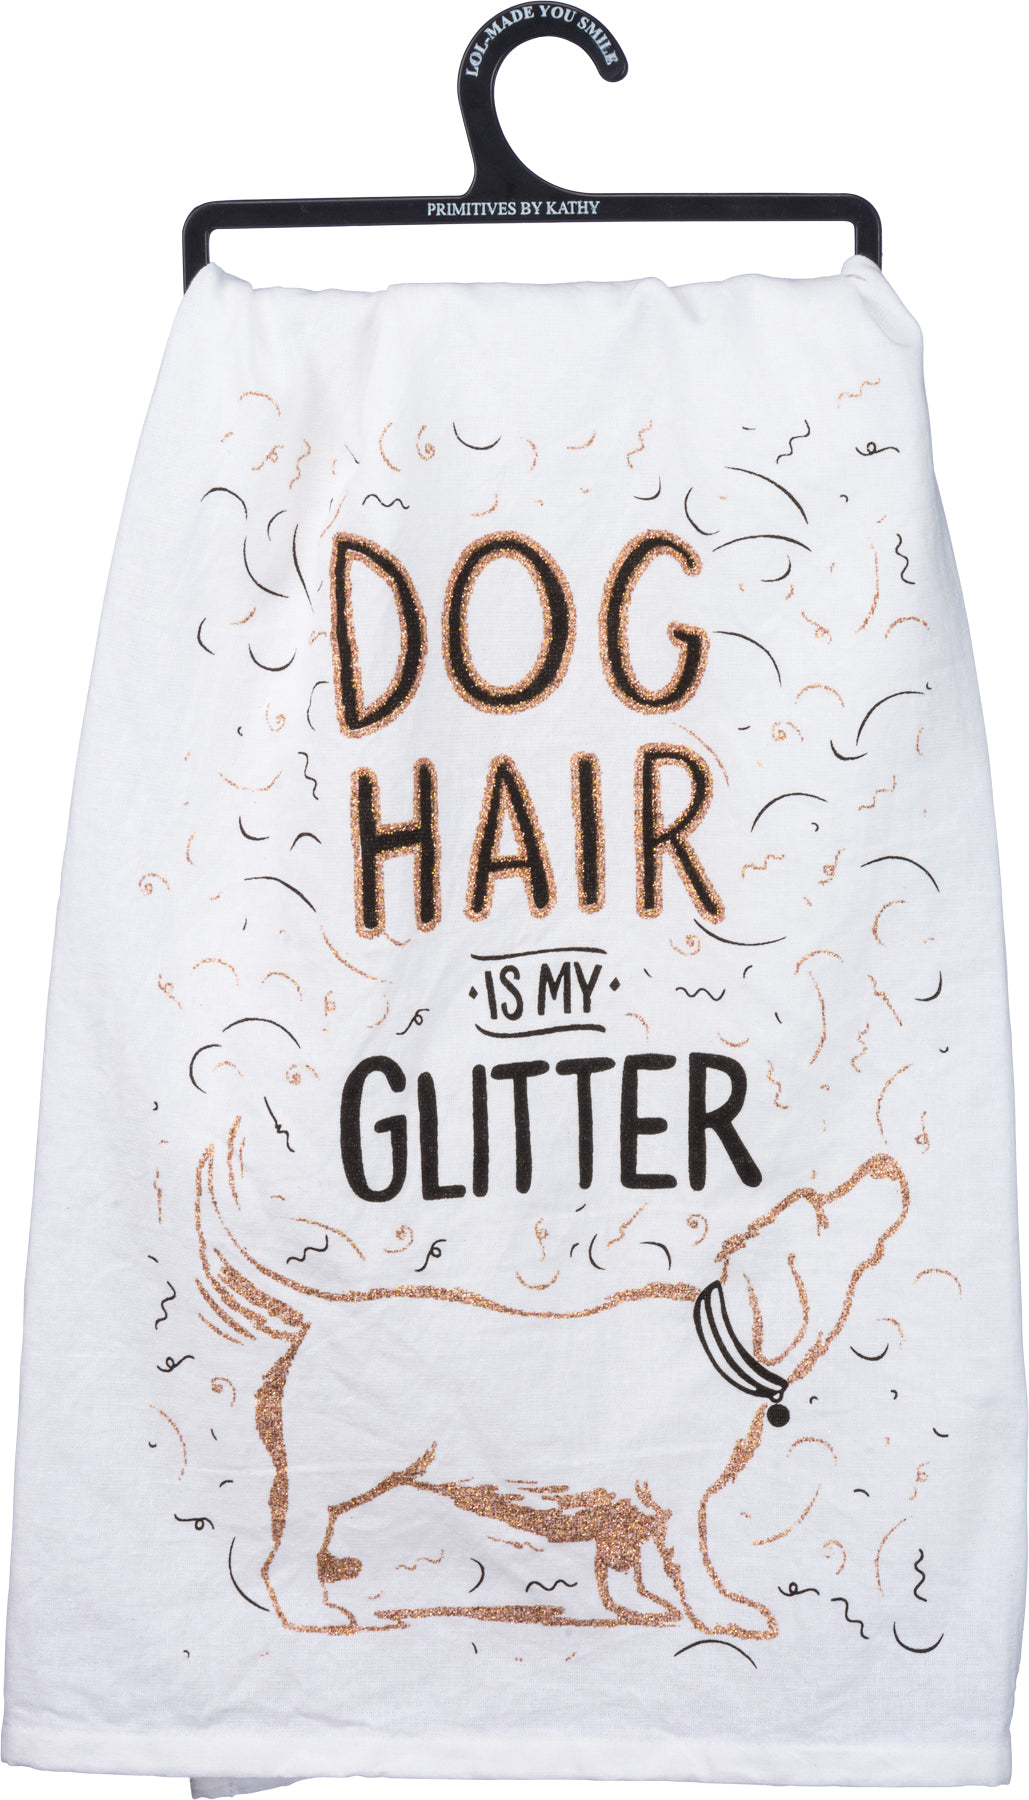 Dish Towel-Dog Hair Glitter